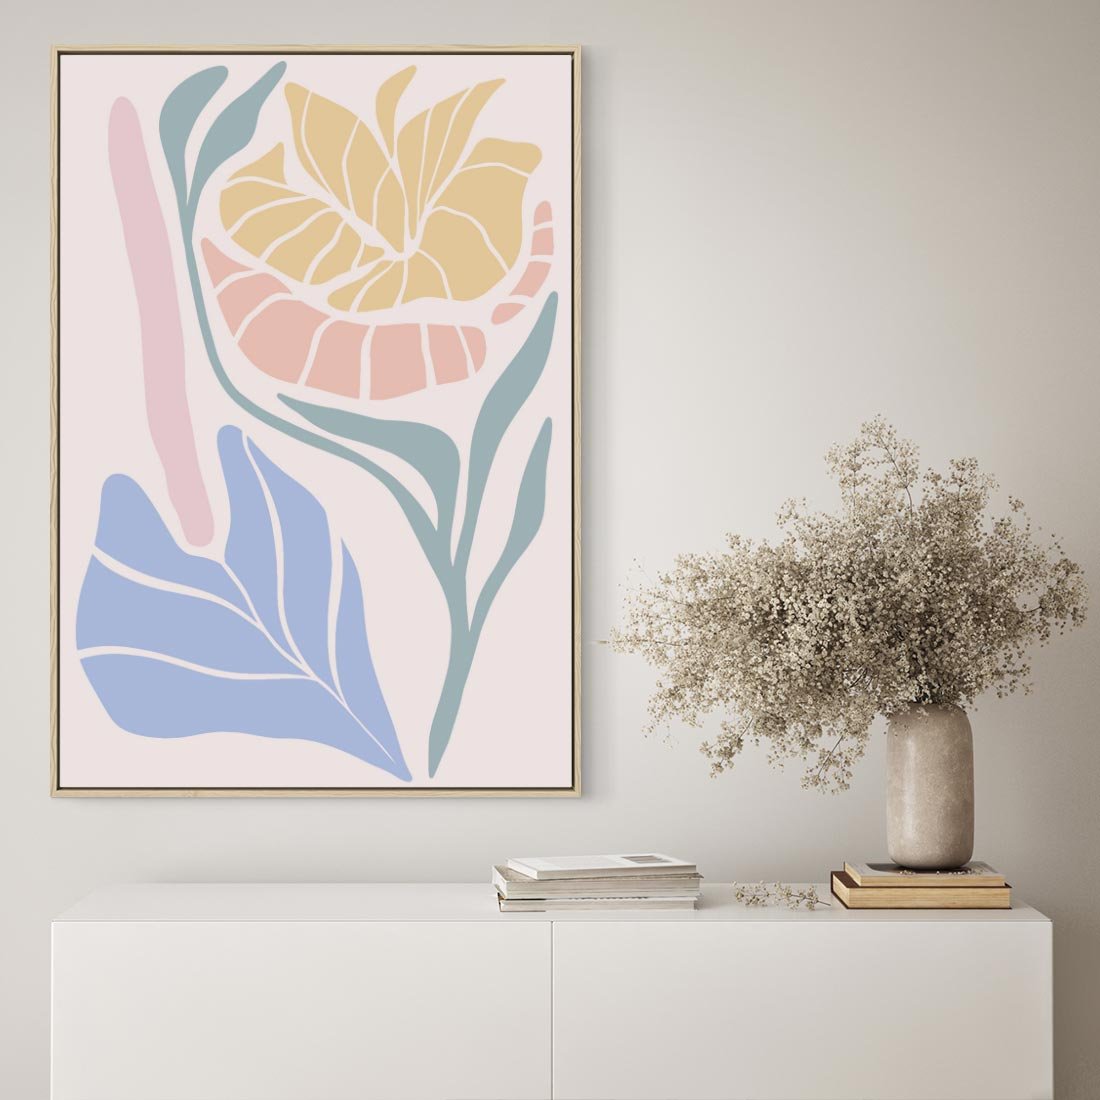 Obraz w ramie 50x70 - Kwiatowe Granice Kształtów - nowoczesny plakat, kwiaty w pastelowych kolorach - rama drewno